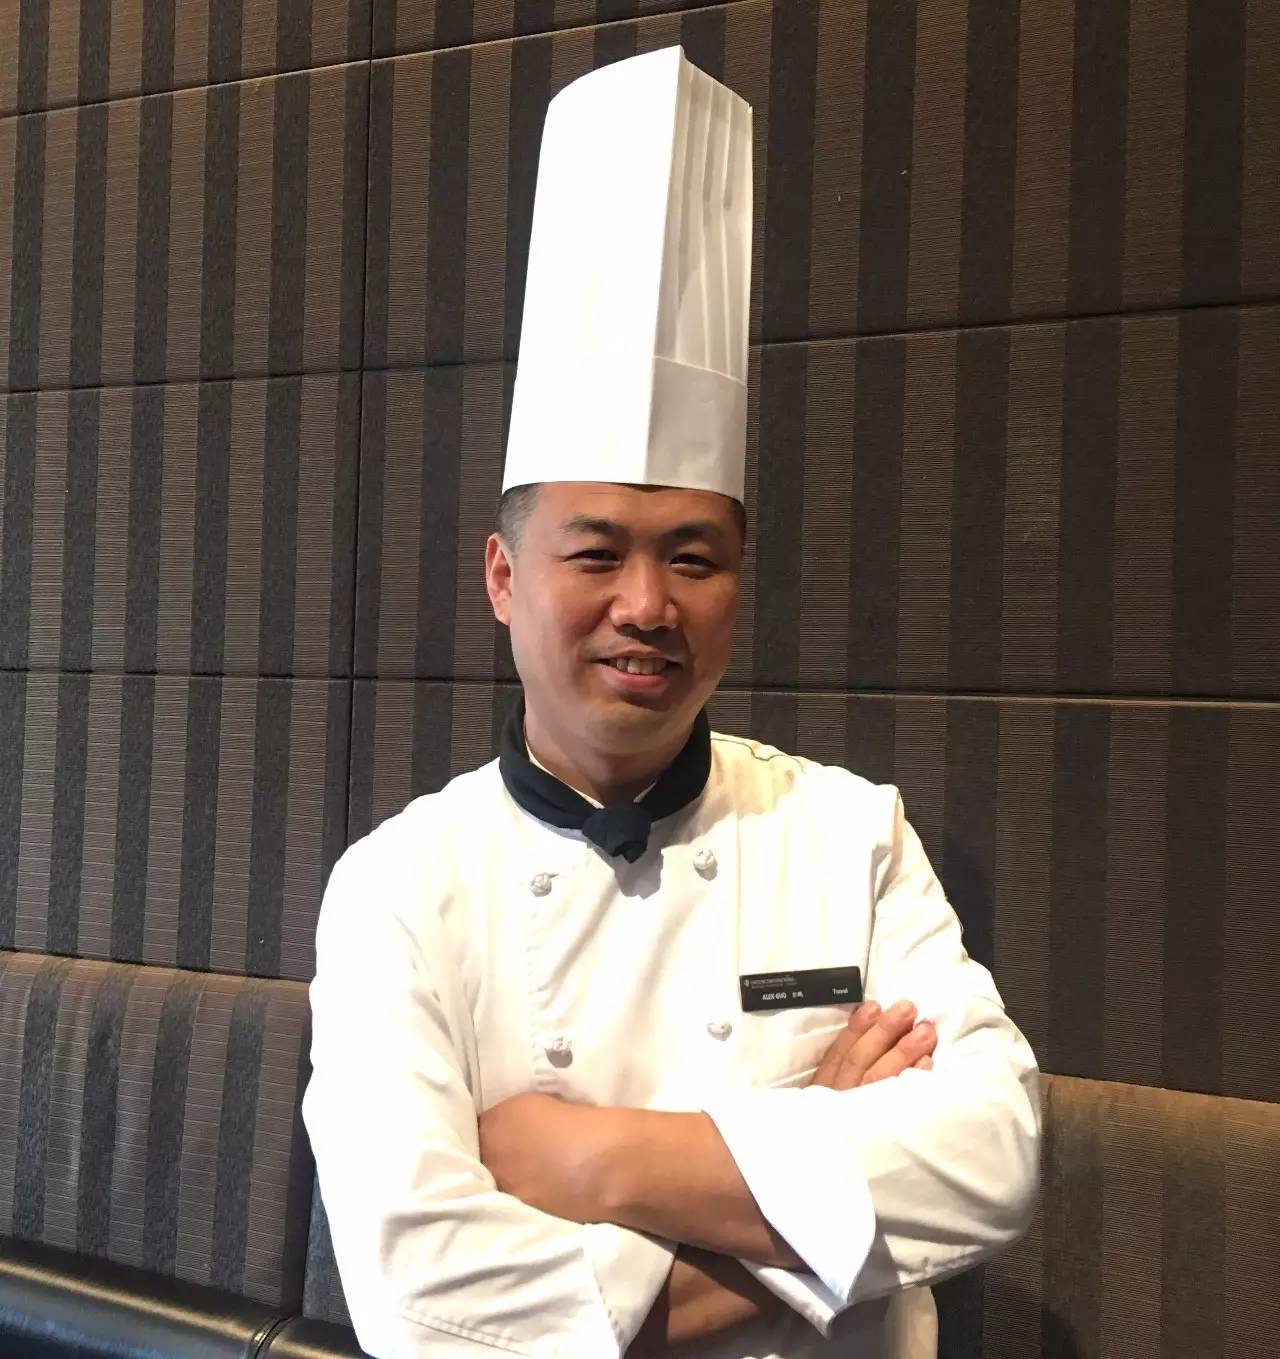 东莞洲际酒店总厨图片